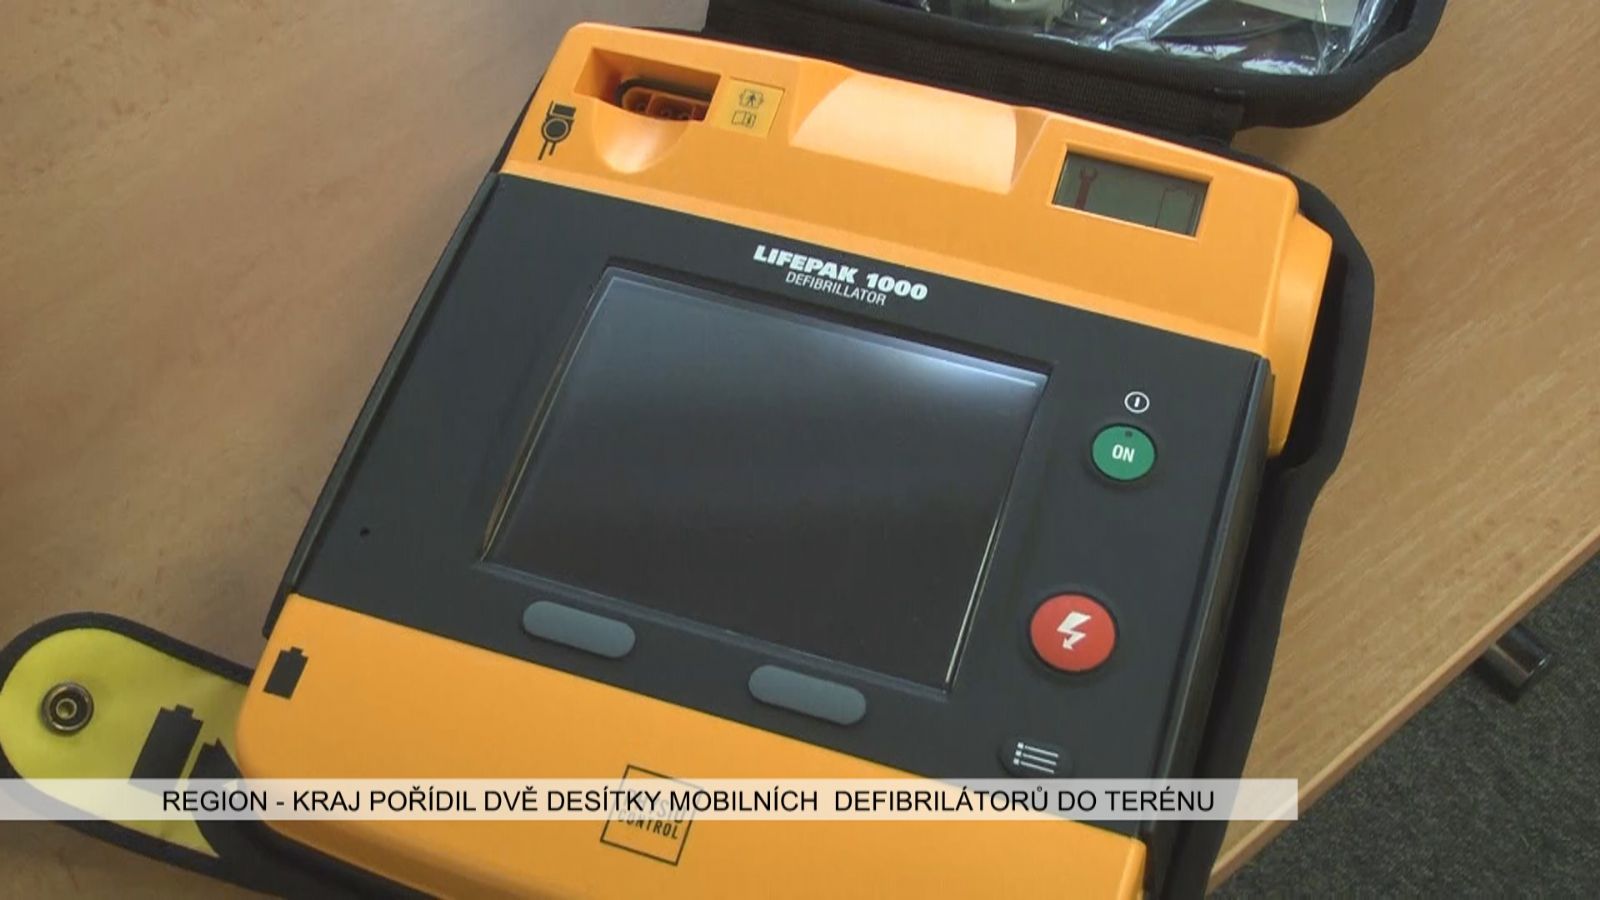 Region: Kraj pořídil dvě desítky mobilních defibrilátorů do terénu (TV Západ)